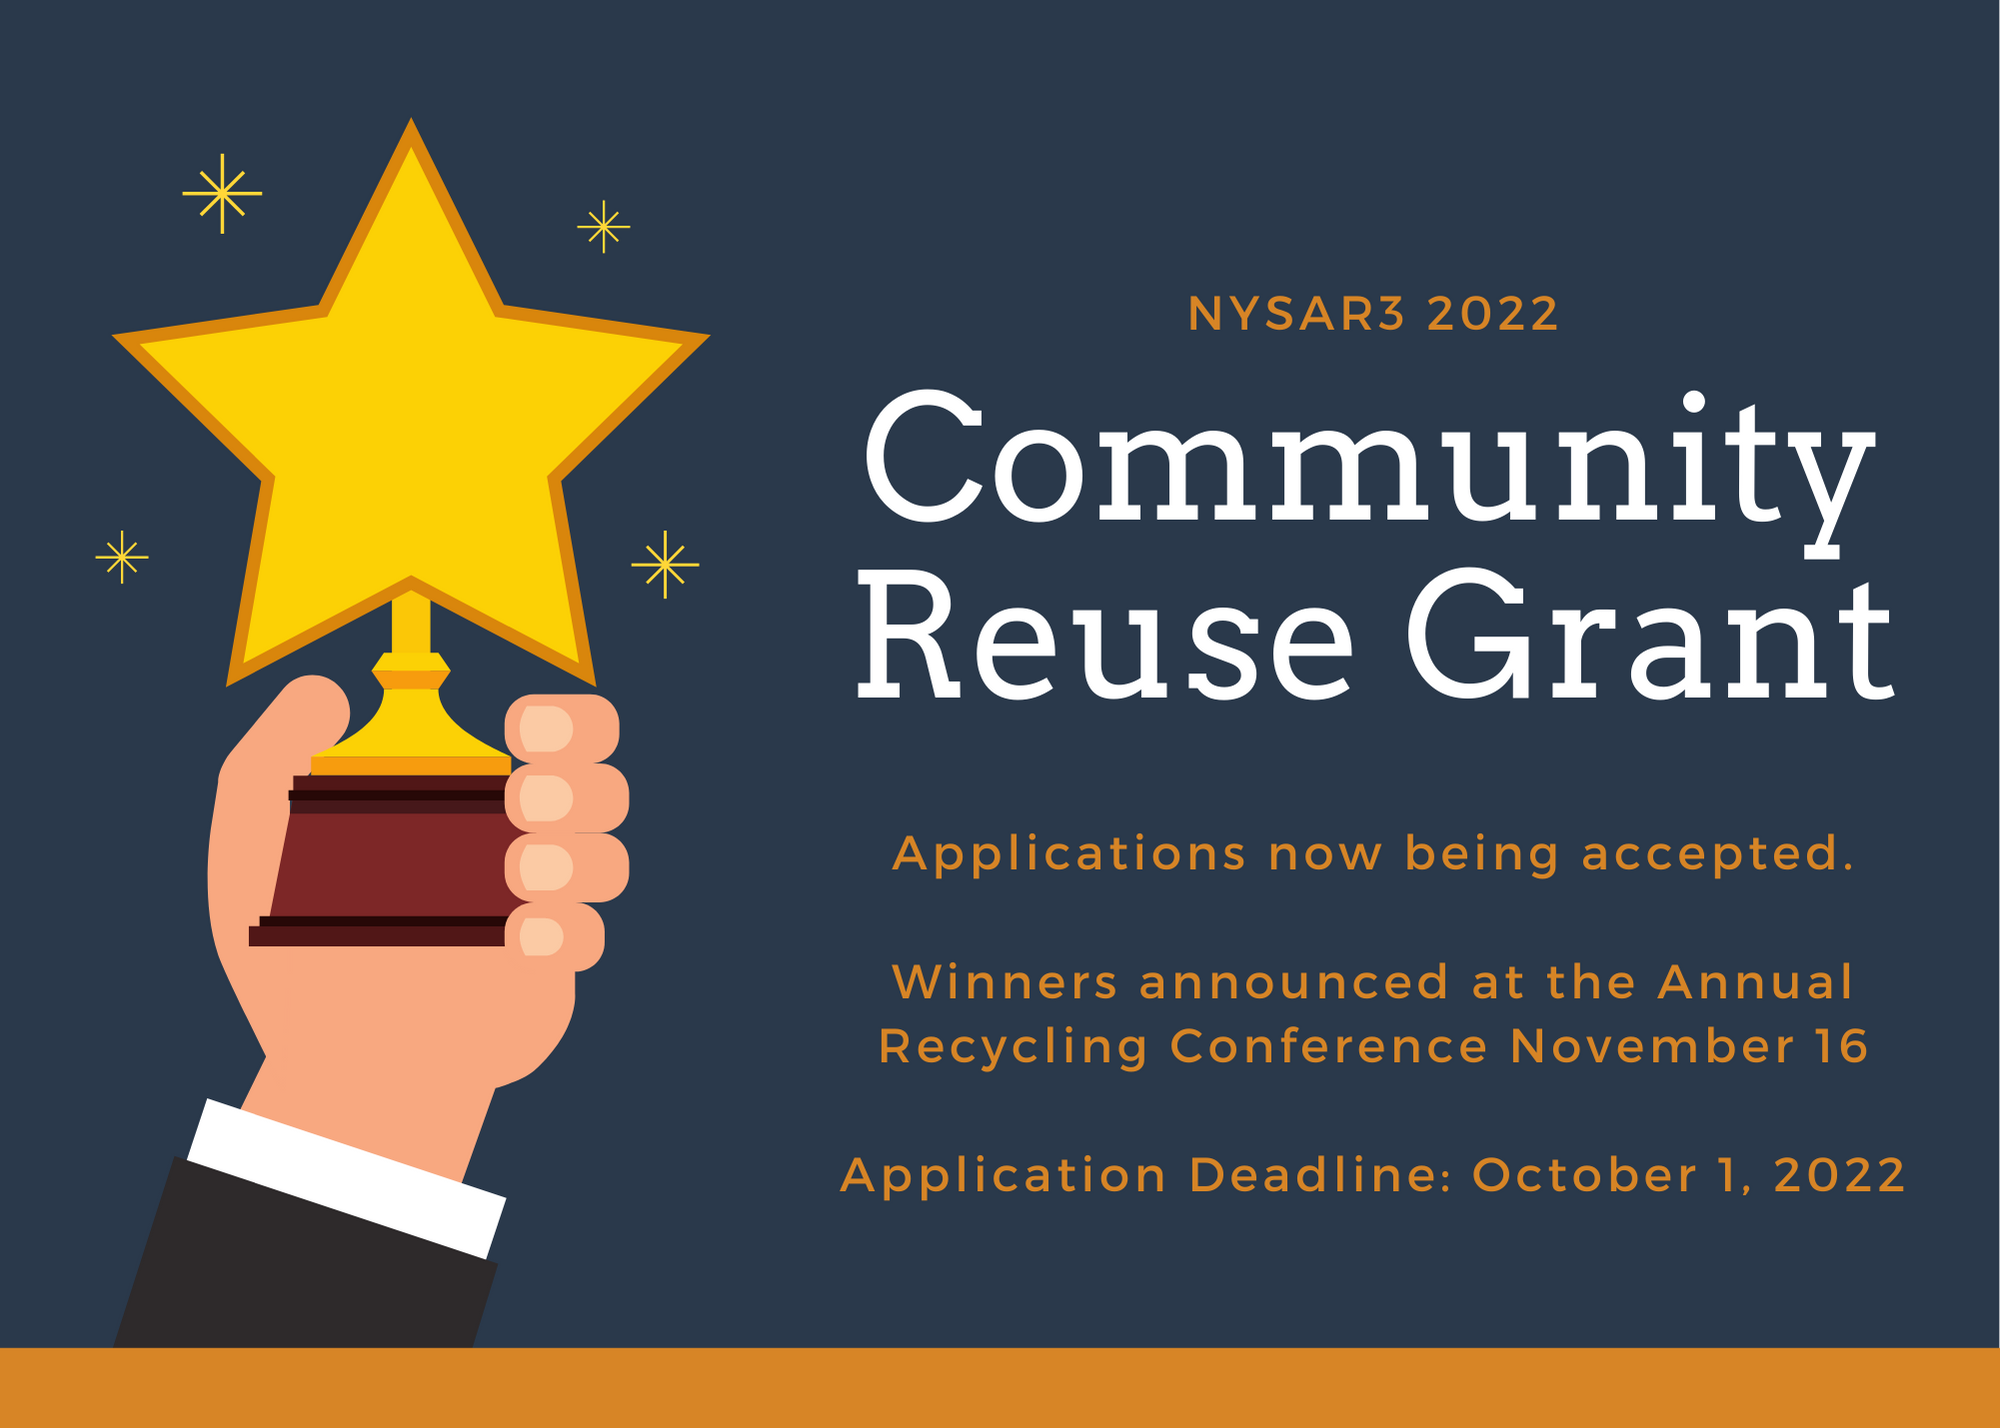 Uploaded Image: /vs-uploads/reuse-grant-2022/Reuse Grant.png